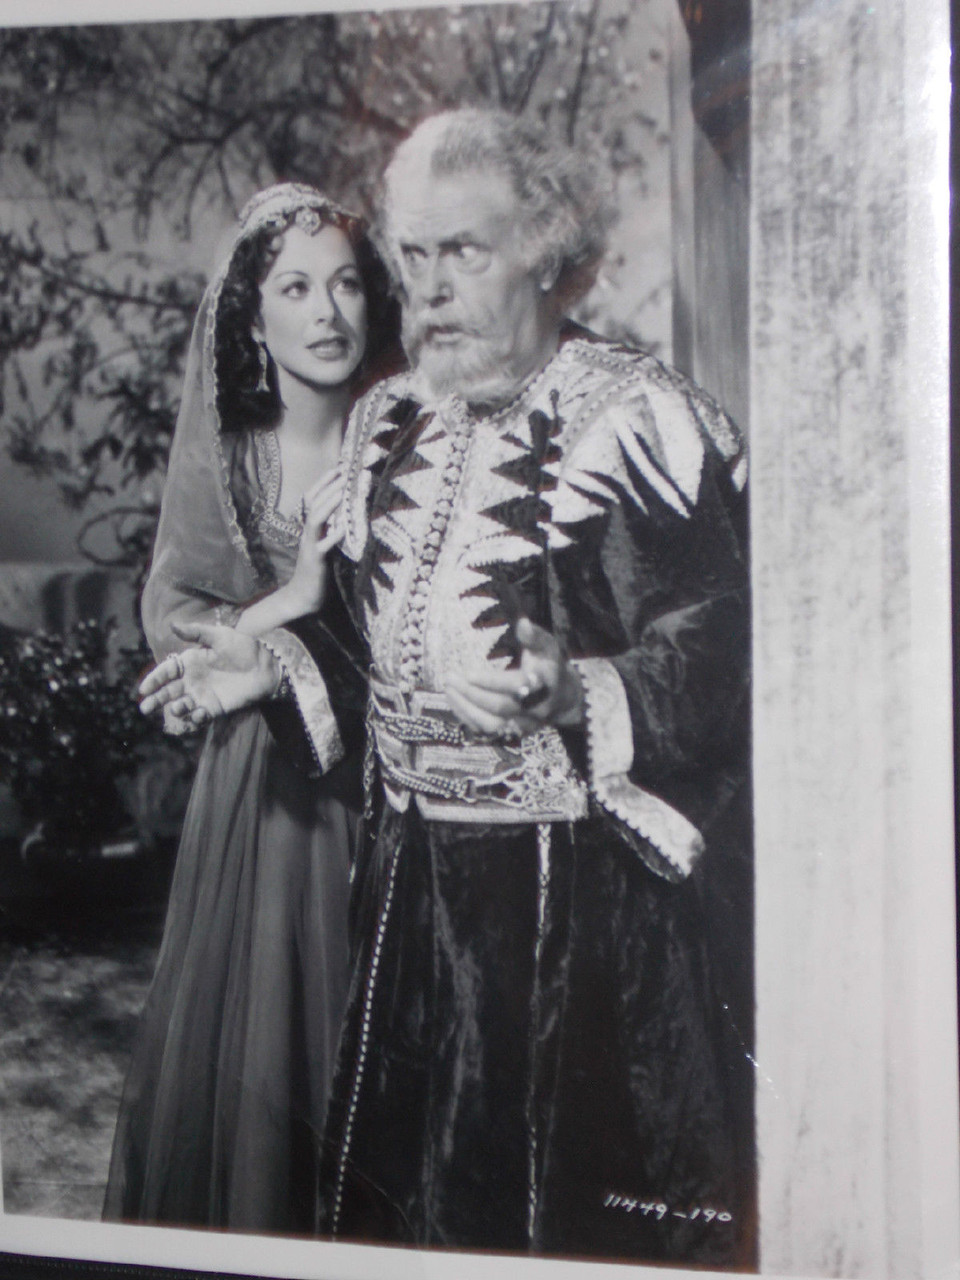 Costume porté par WILLIAM FARNUM dans SAMSON and DELILAH 1949.